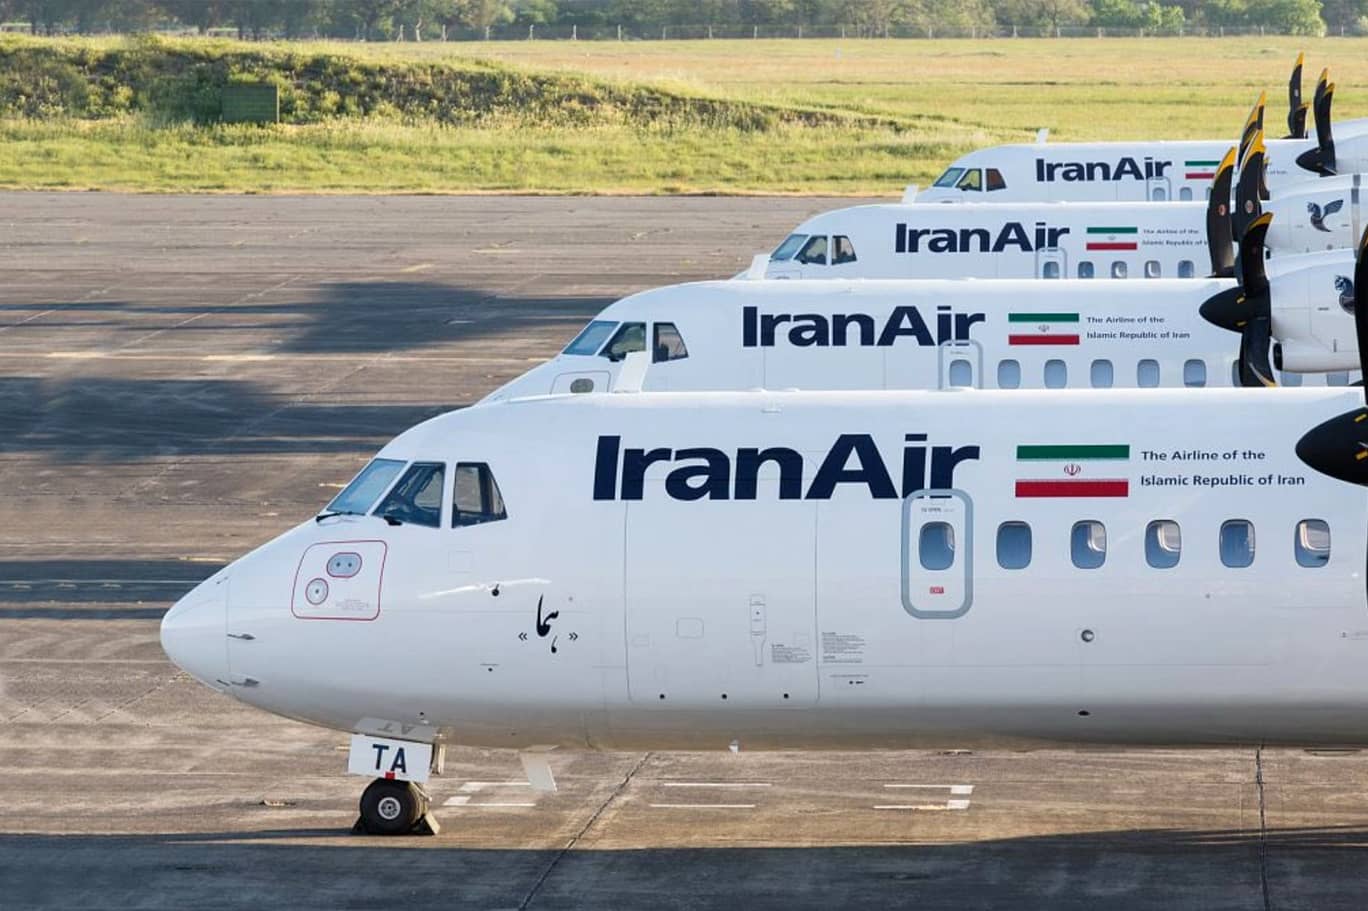 İran Türkiye'nin eski 4 Airbus uçağını satın aldı